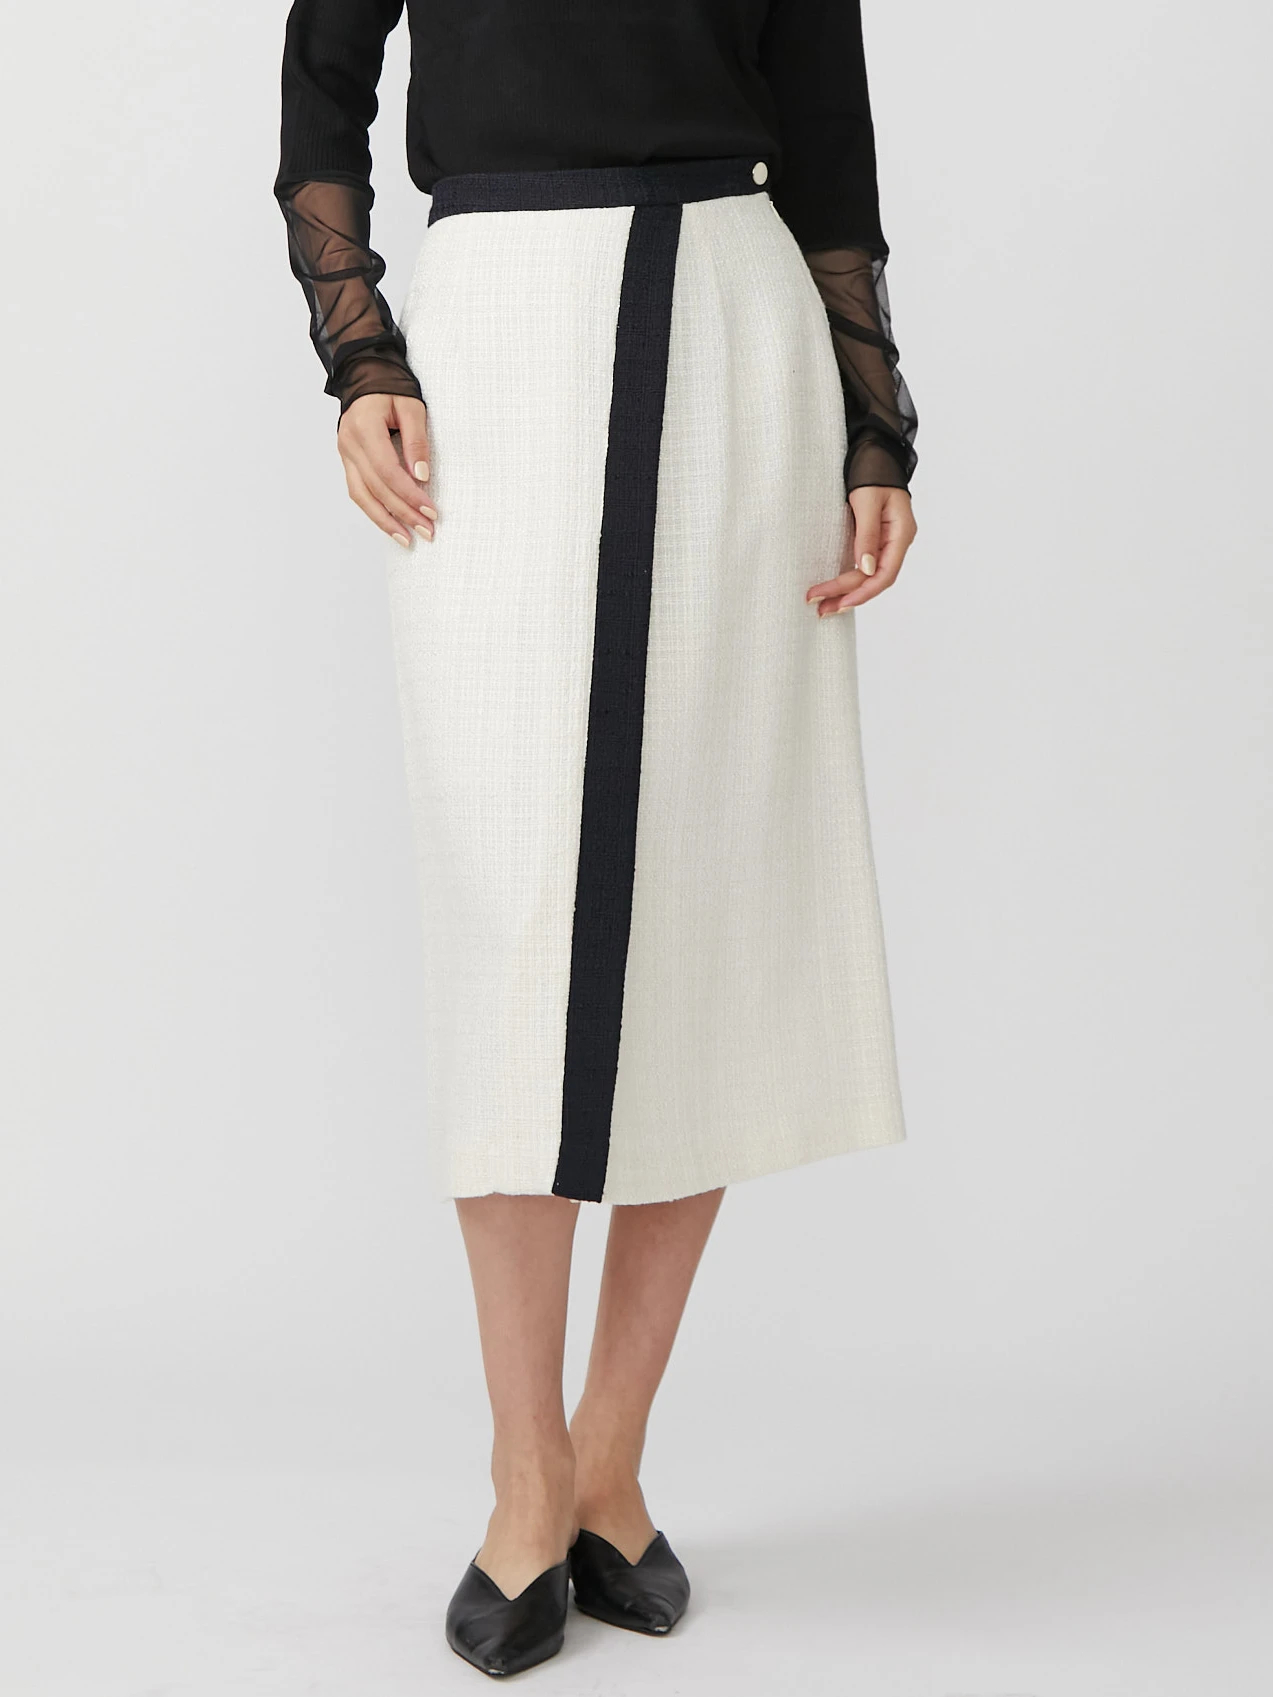 ツイードアシメAラインスカート | レディースファッション通販のTONAL